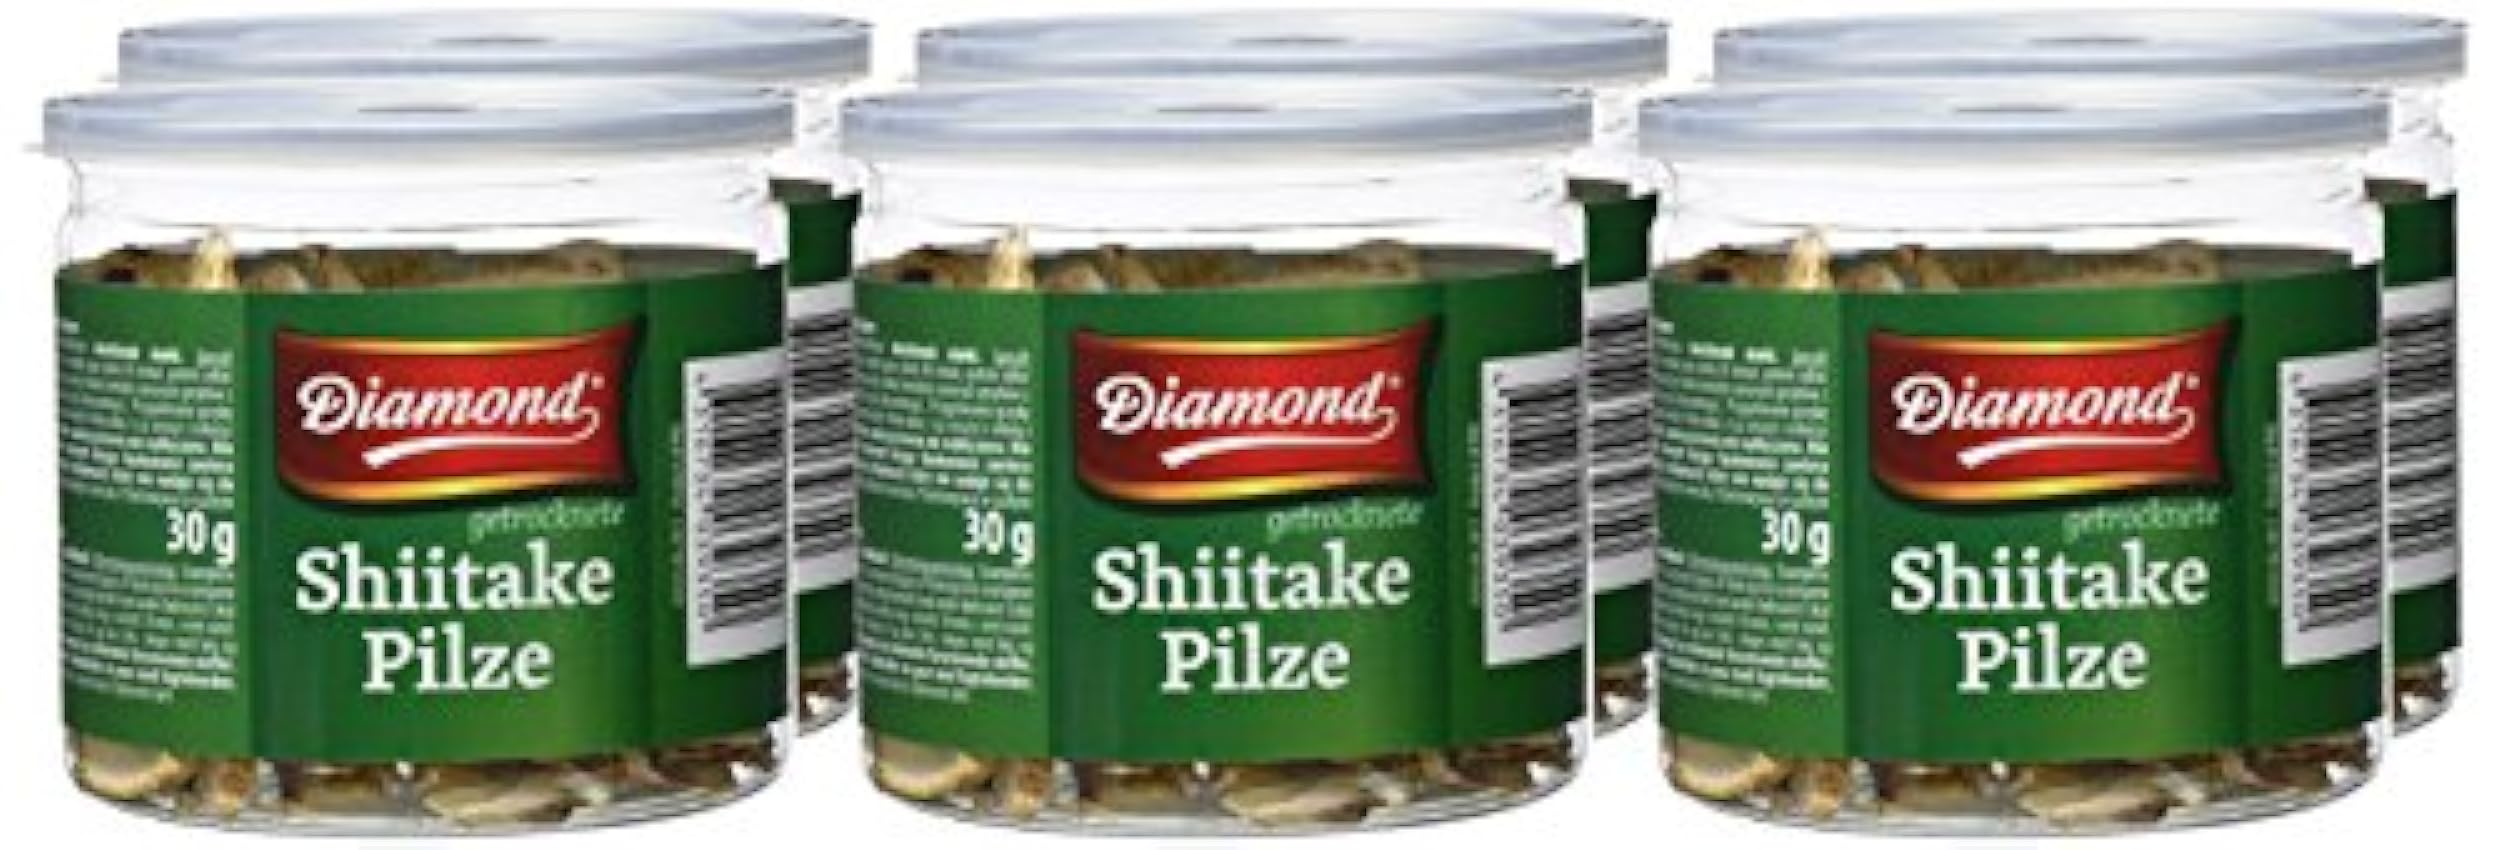 Diamond Setas Shiitake, Secas, Cortadas - Paquete de 6 x 30 gr - Total: 180 gr jeQb9i3W